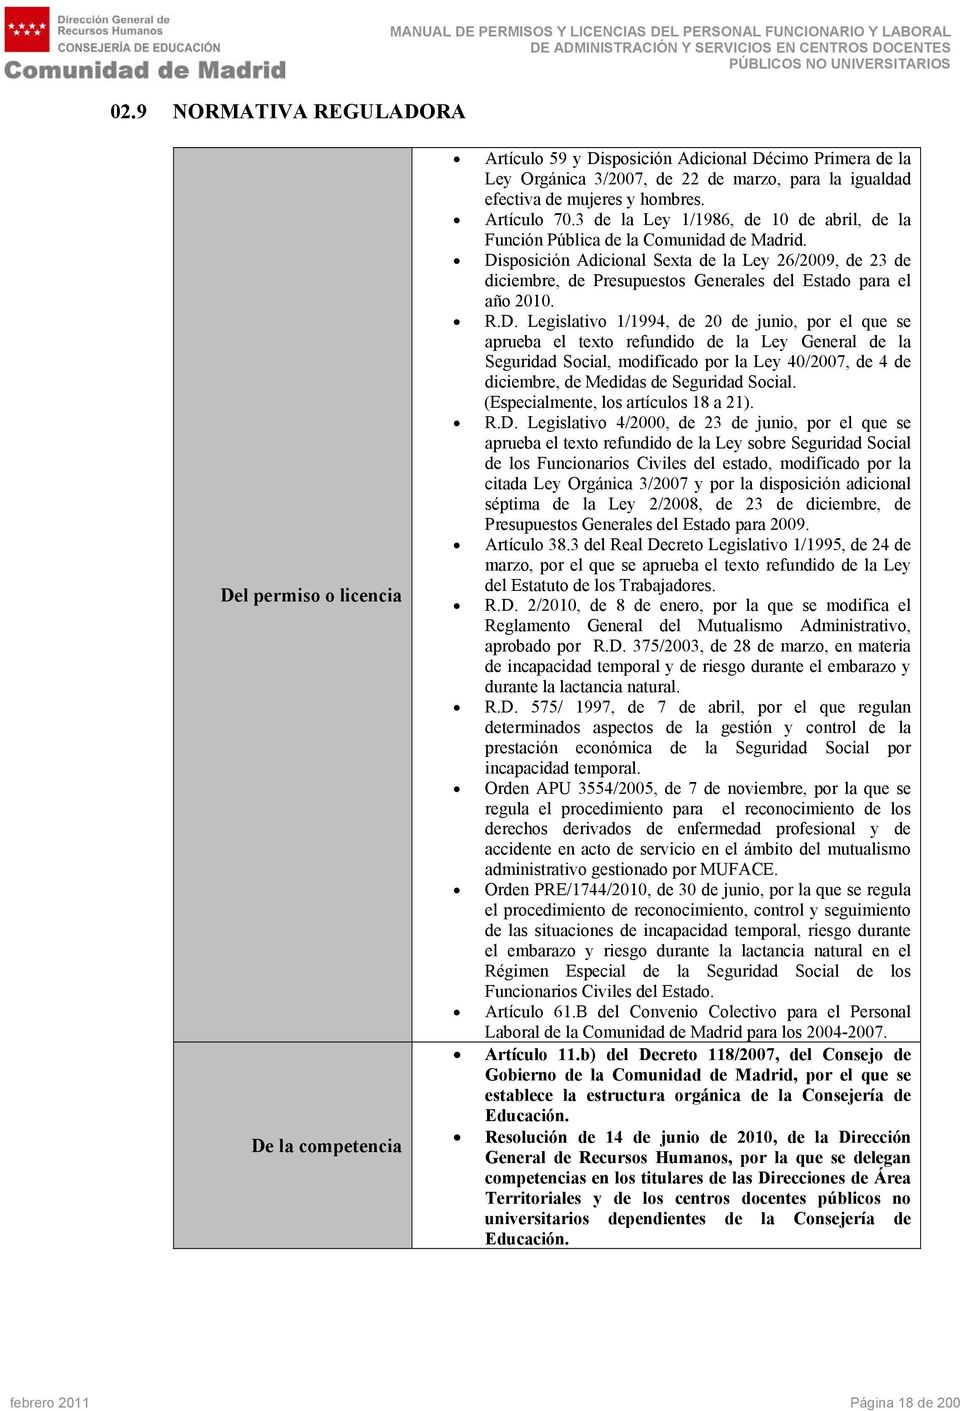 Disposición Adicional Sexta de la Ley 26/2009, de 23 de diciembre, de Presupuestos Generales del Estado para el año 2010. R.D. Legislativo 1/1994, de 20 de junio, por el que se aprueba el texto